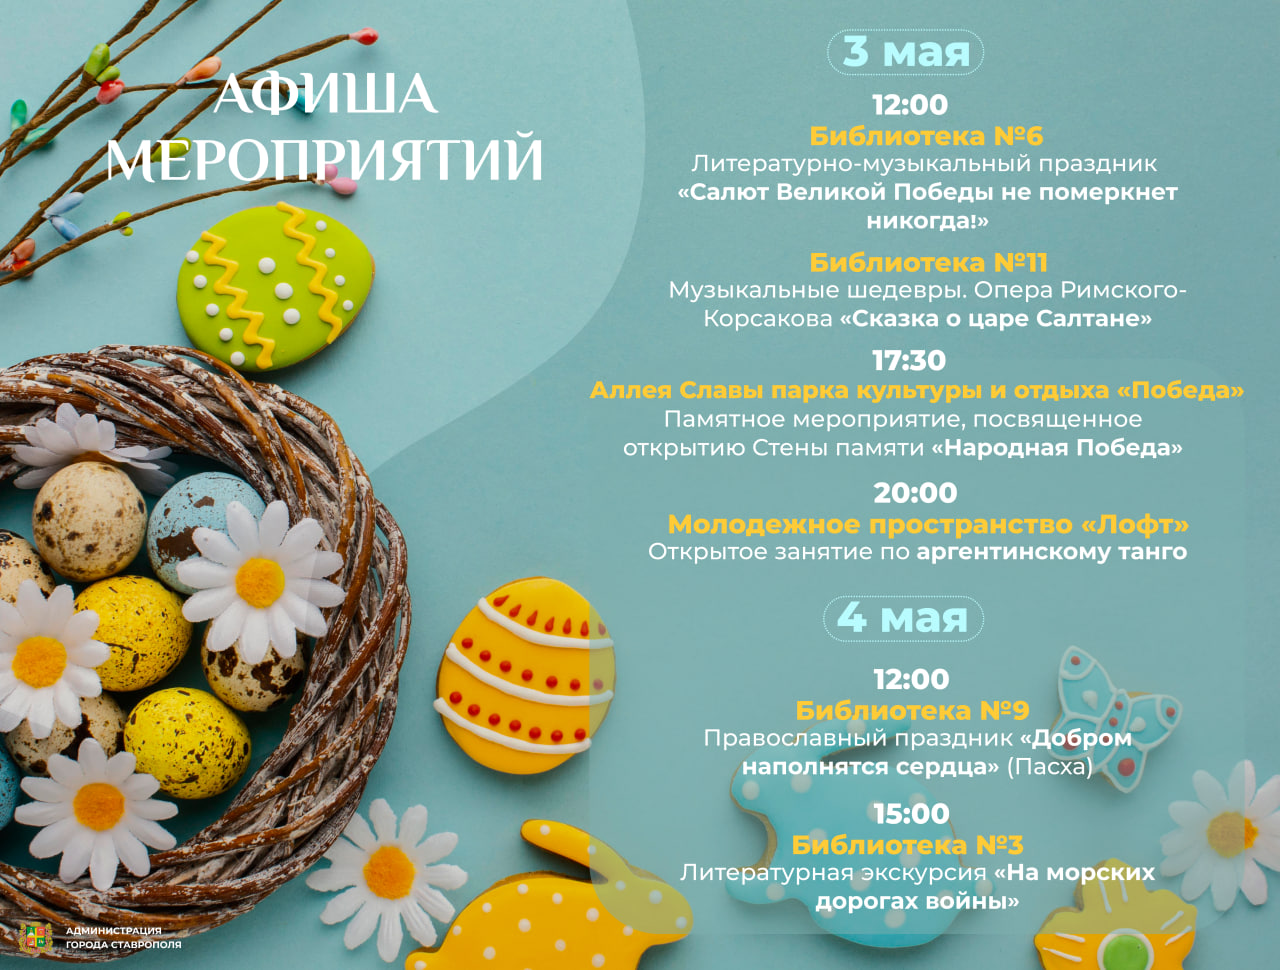 Открытие Стены памяти и знакомство с русской оперой – в первой майской афише Ставрополя